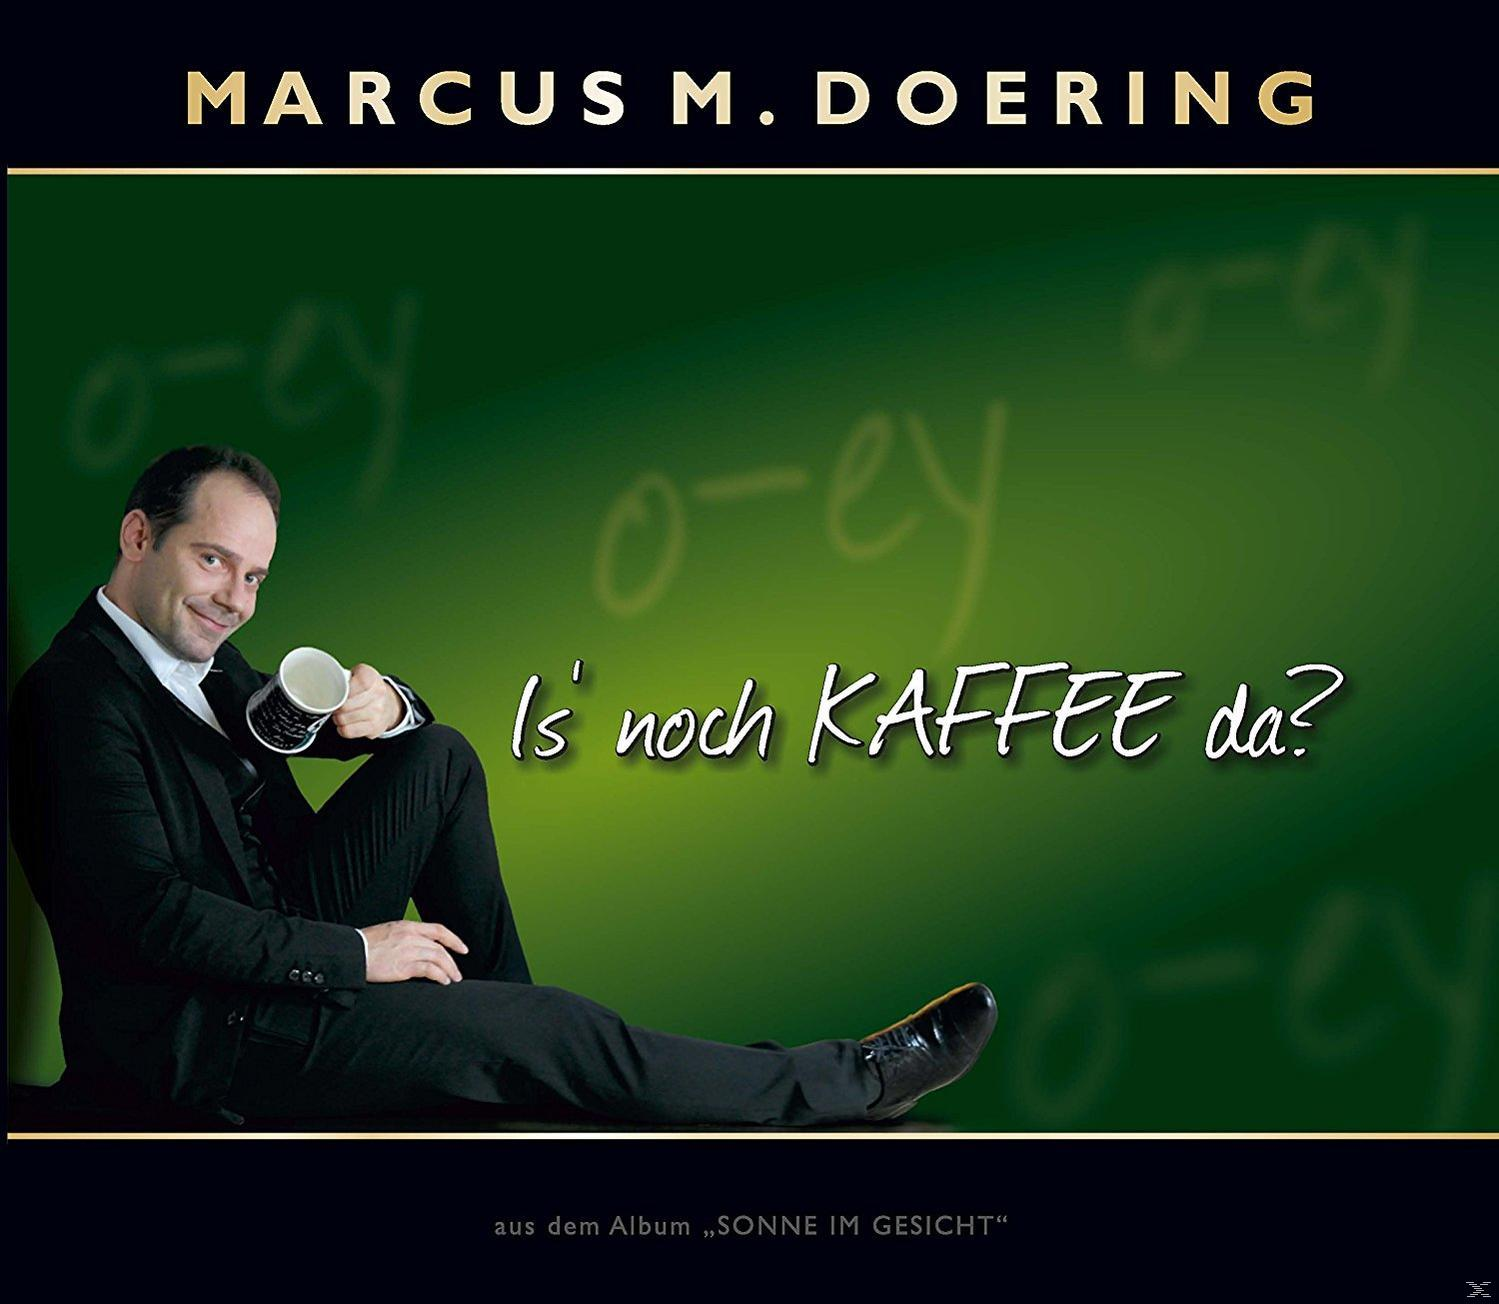 Kaffee Marcus M. - noch (CD) Is\' - (Single) Doering da?